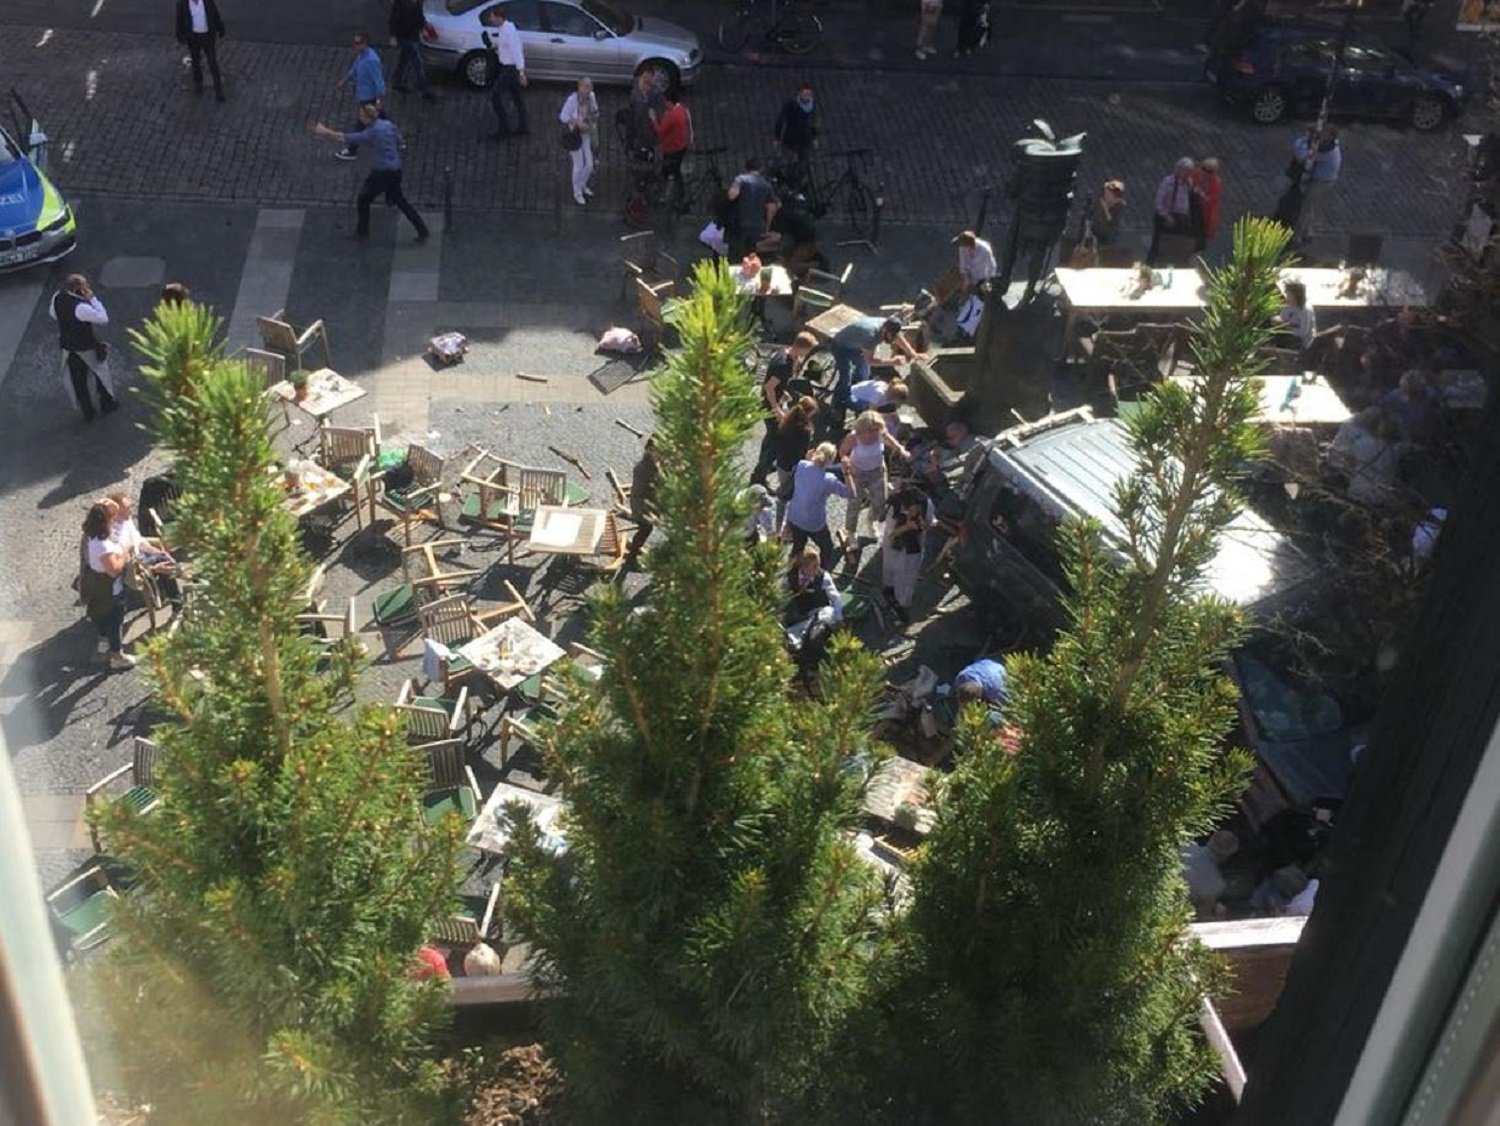 La policía descarta la autoría terrorista en el atropello de Münster, que ha causado 3 muertes